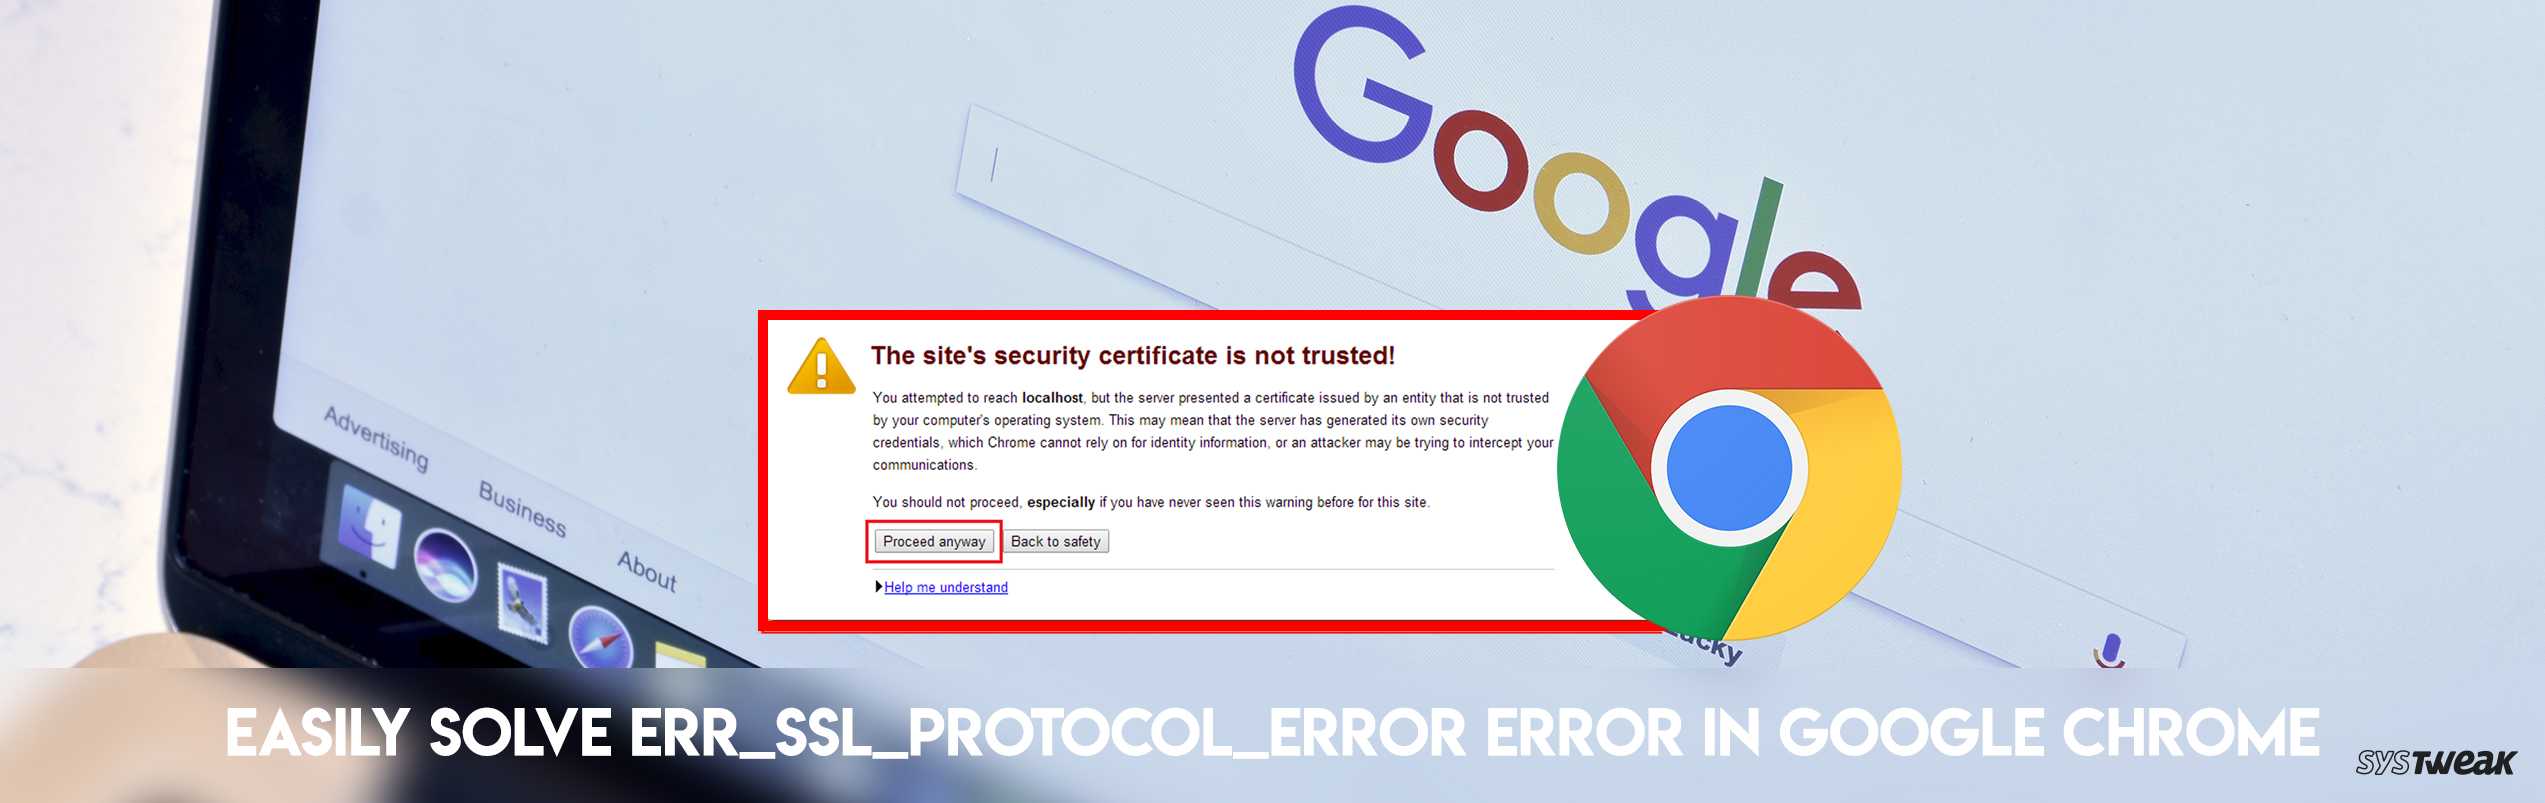 Почему возникает ошибка err connection reset в google chrome